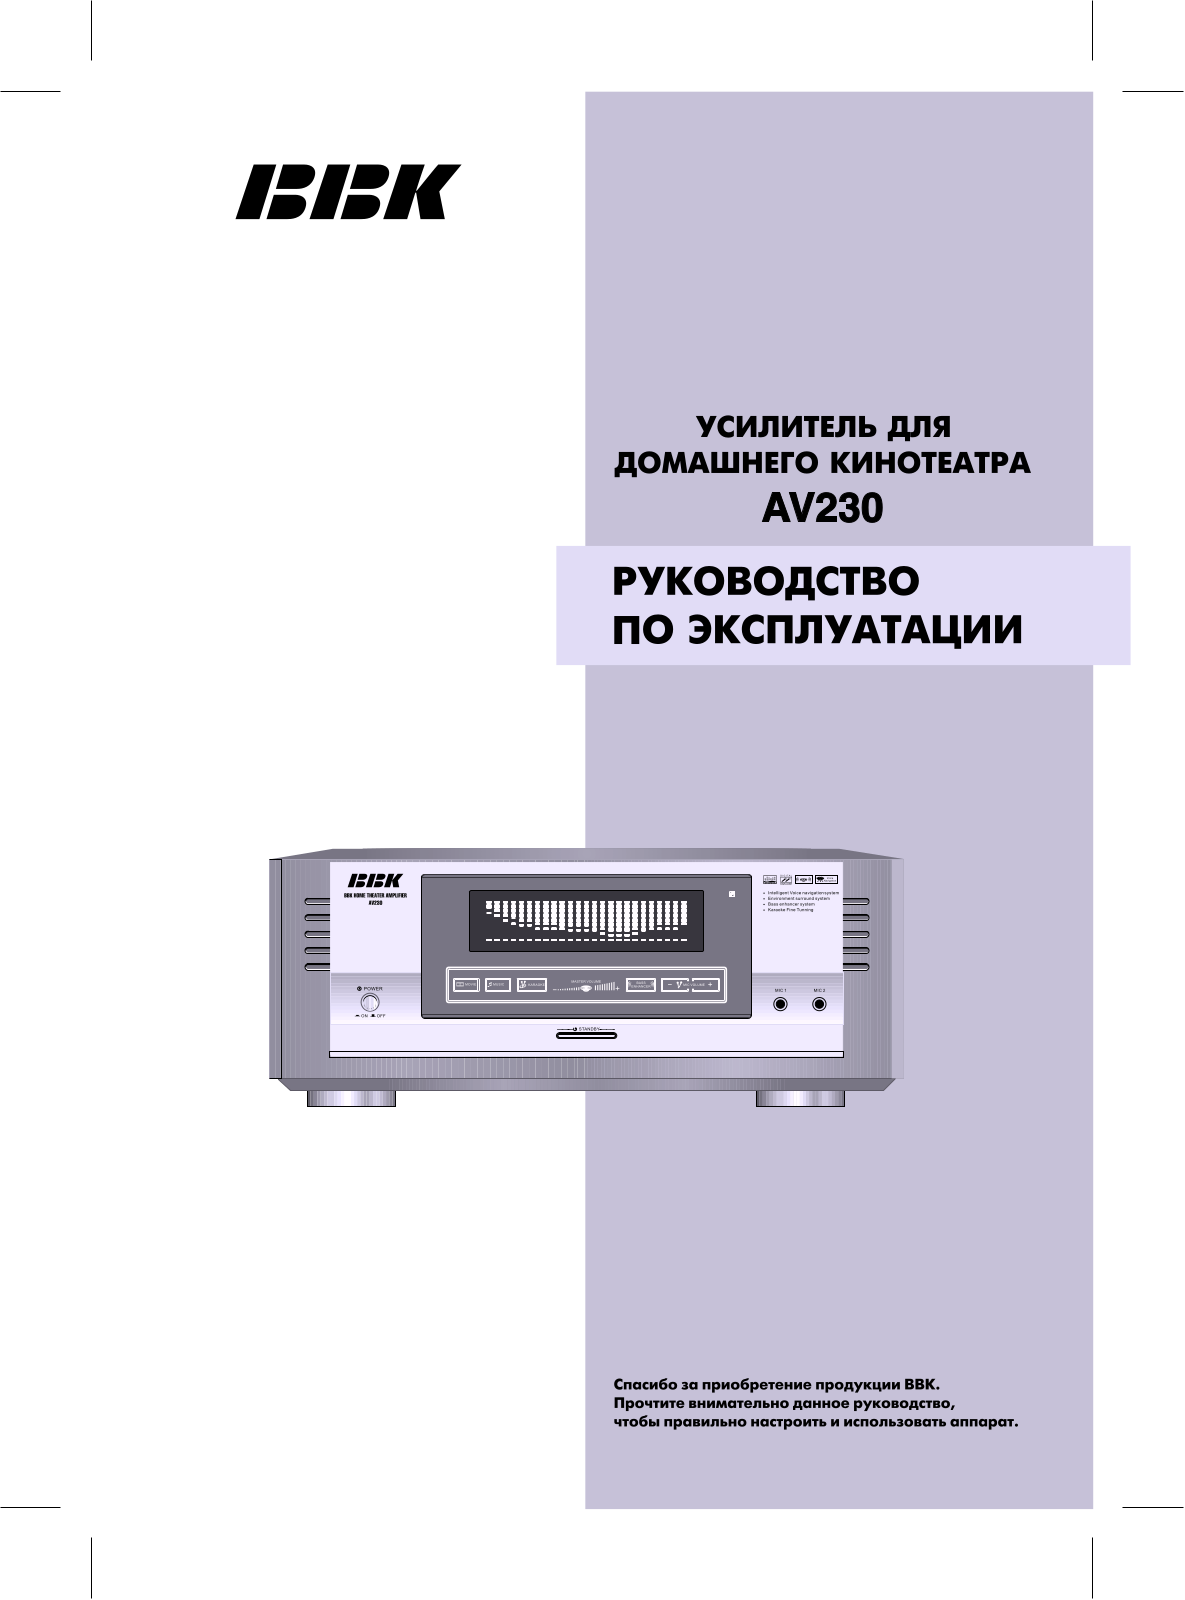 BBK AV230 User Manual